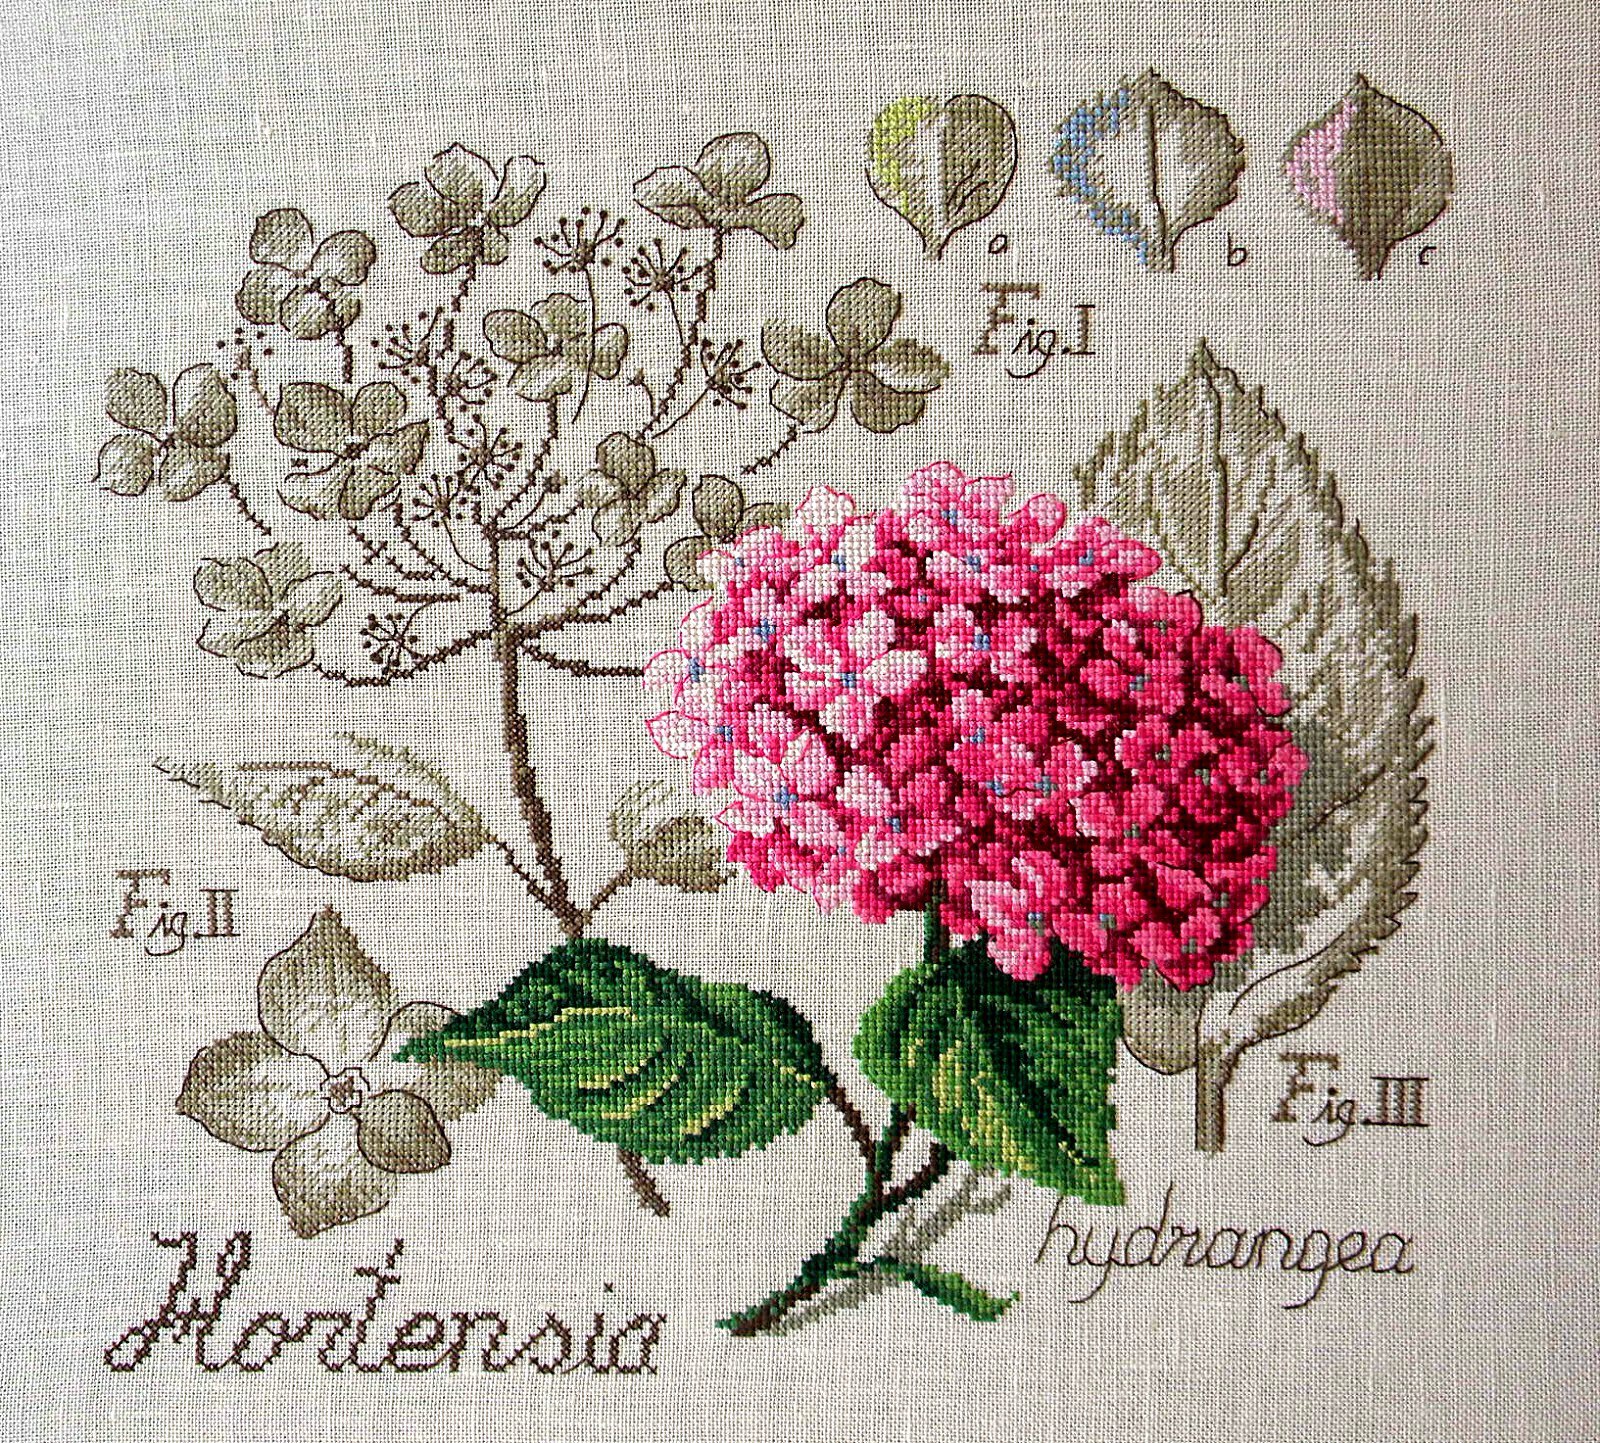 Гортензия / Hortensia - ботанический этюд Veronique Enginger, набор для вышивания крестом Les brodeuses parisiennes